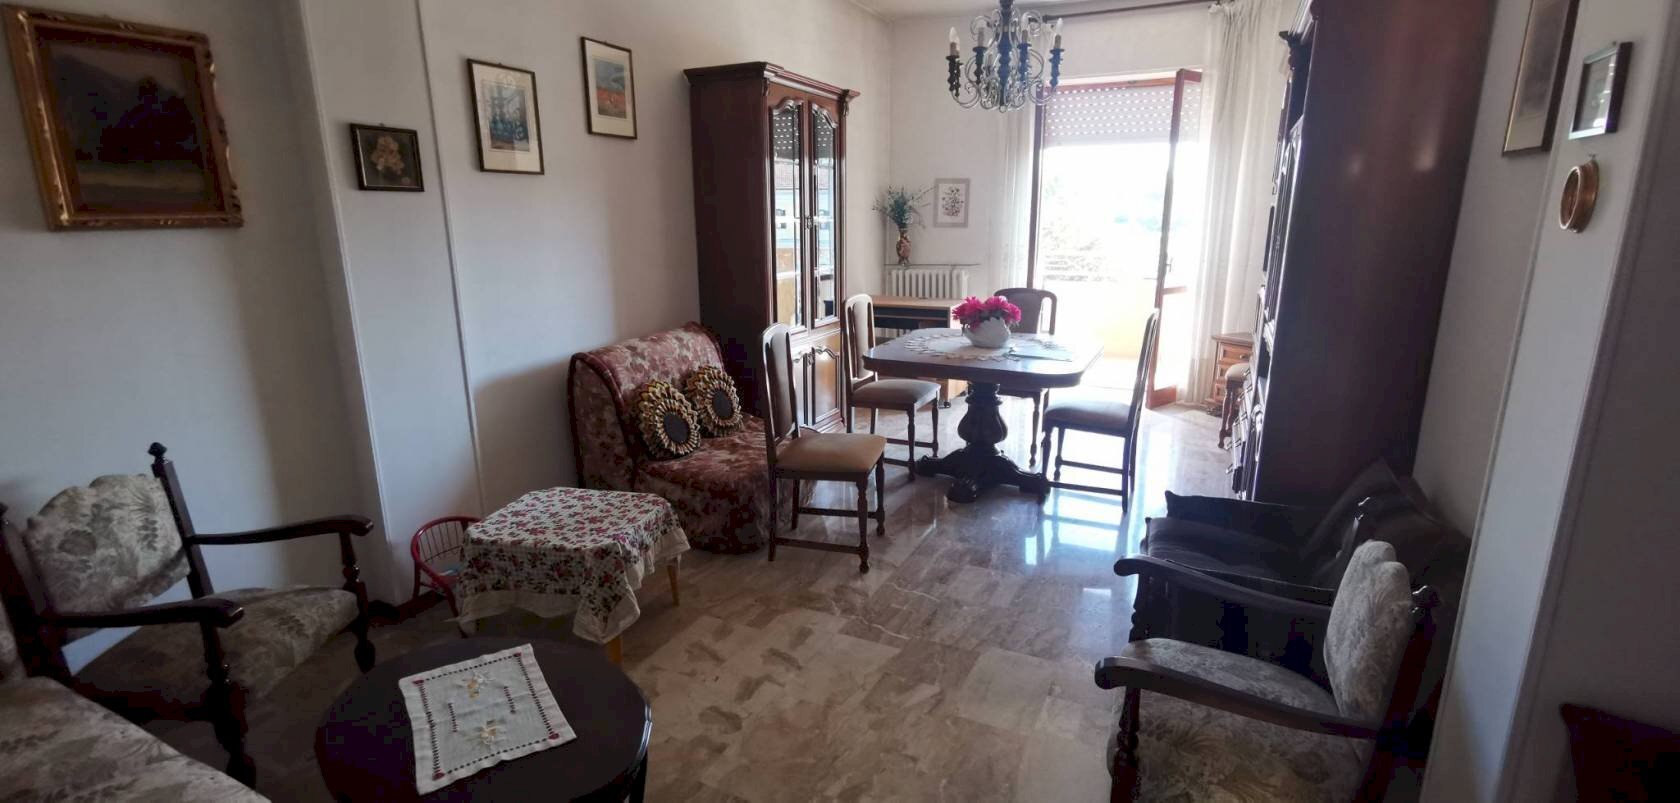 Appartamento in affitto a Montegrosso d'Asti, 1 locali, prezzo € 300 | CambioCasa.it